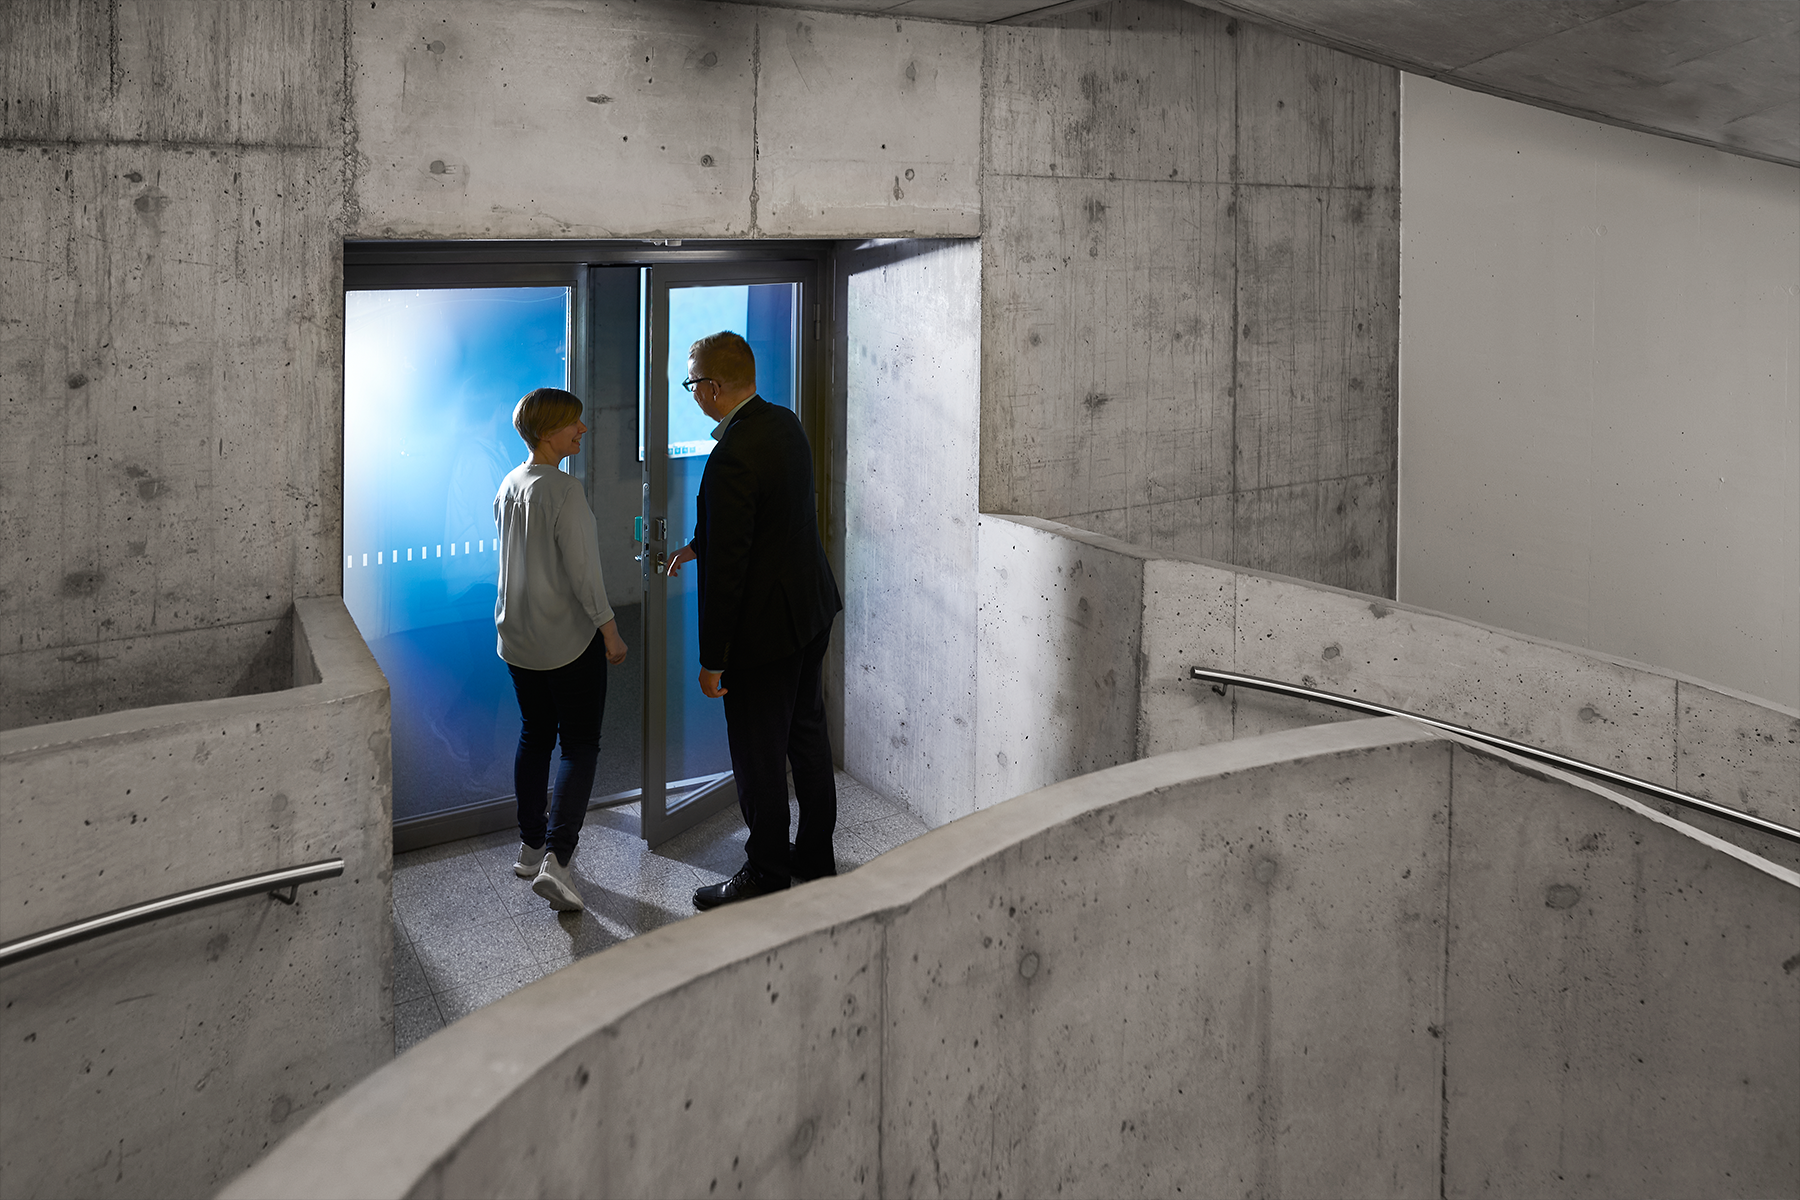  Illustration - två människor vid dörren i grå betong trappan.